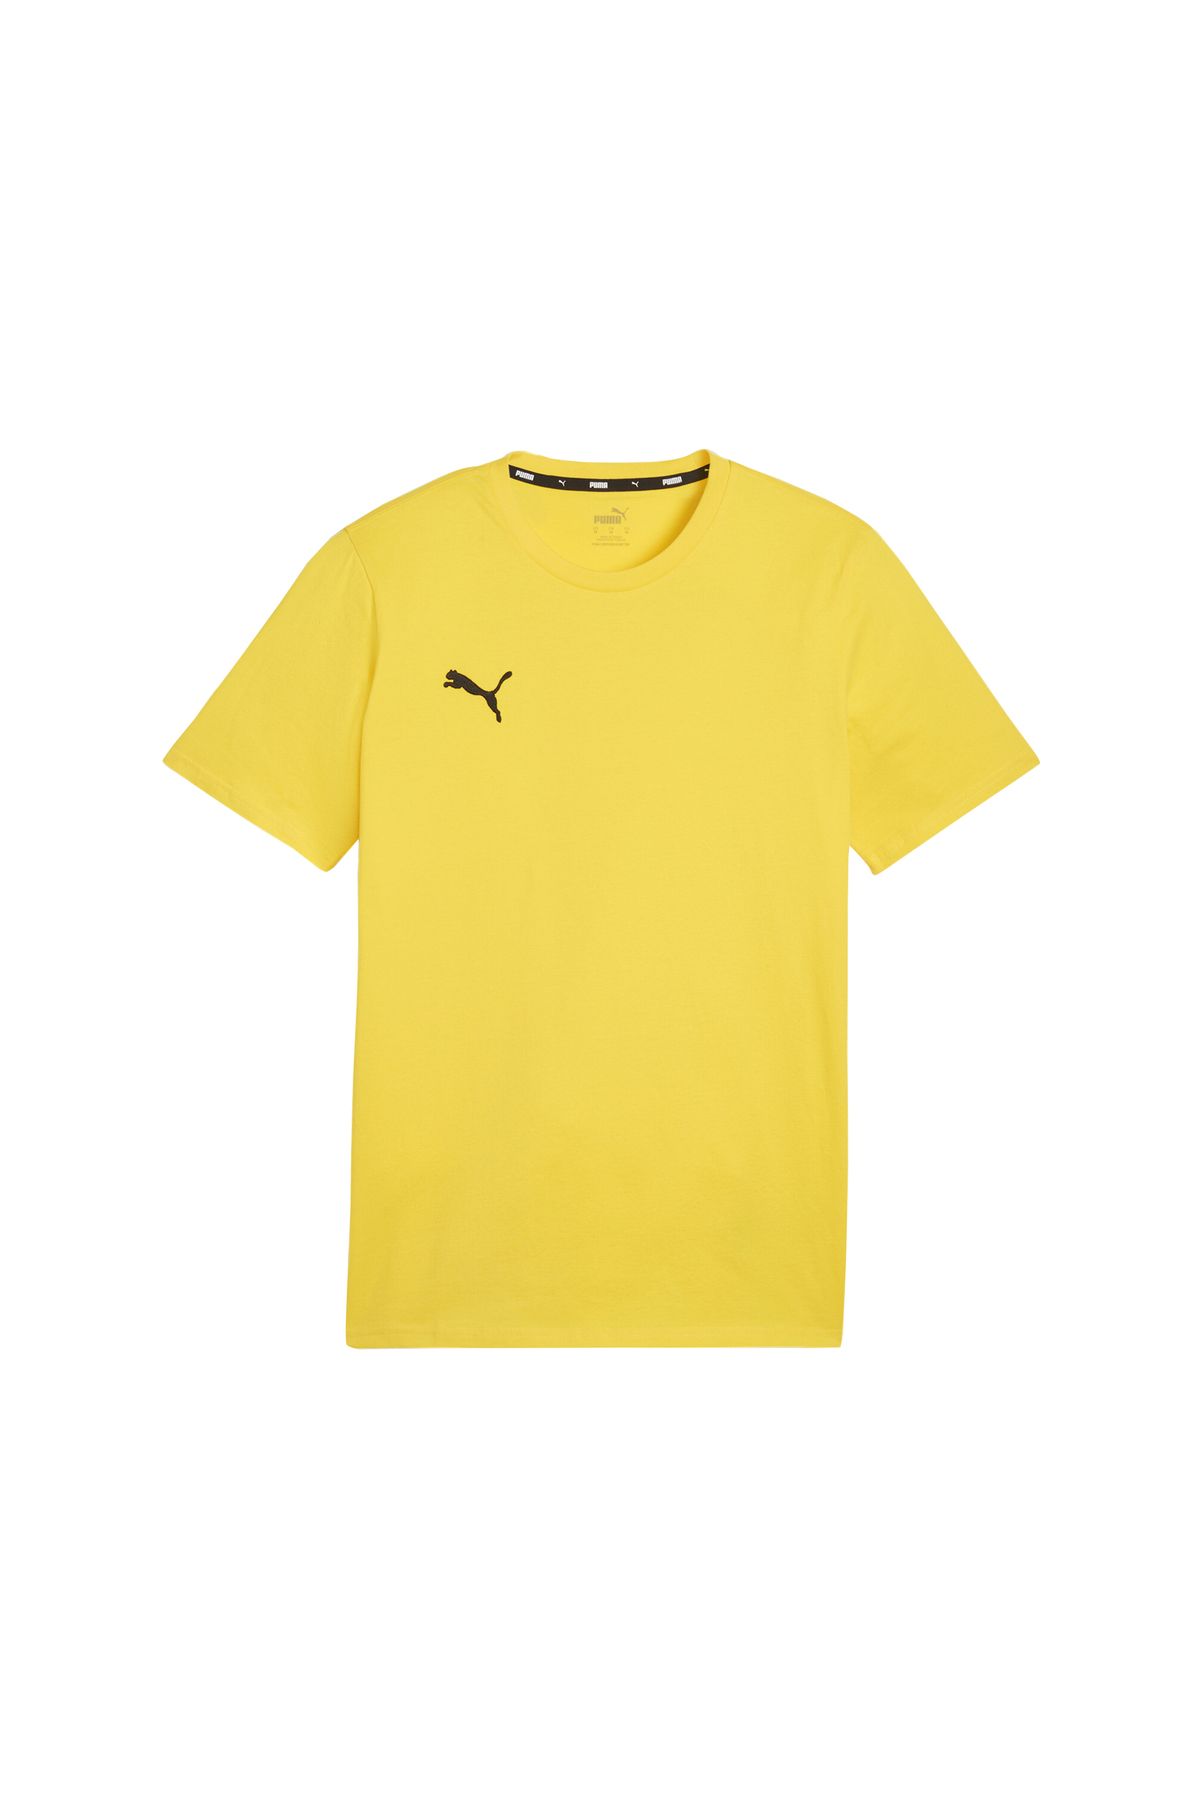 Puma Erkek Tişörtü Günlük Kullanıma Uygun ve Antrenman T-shirt